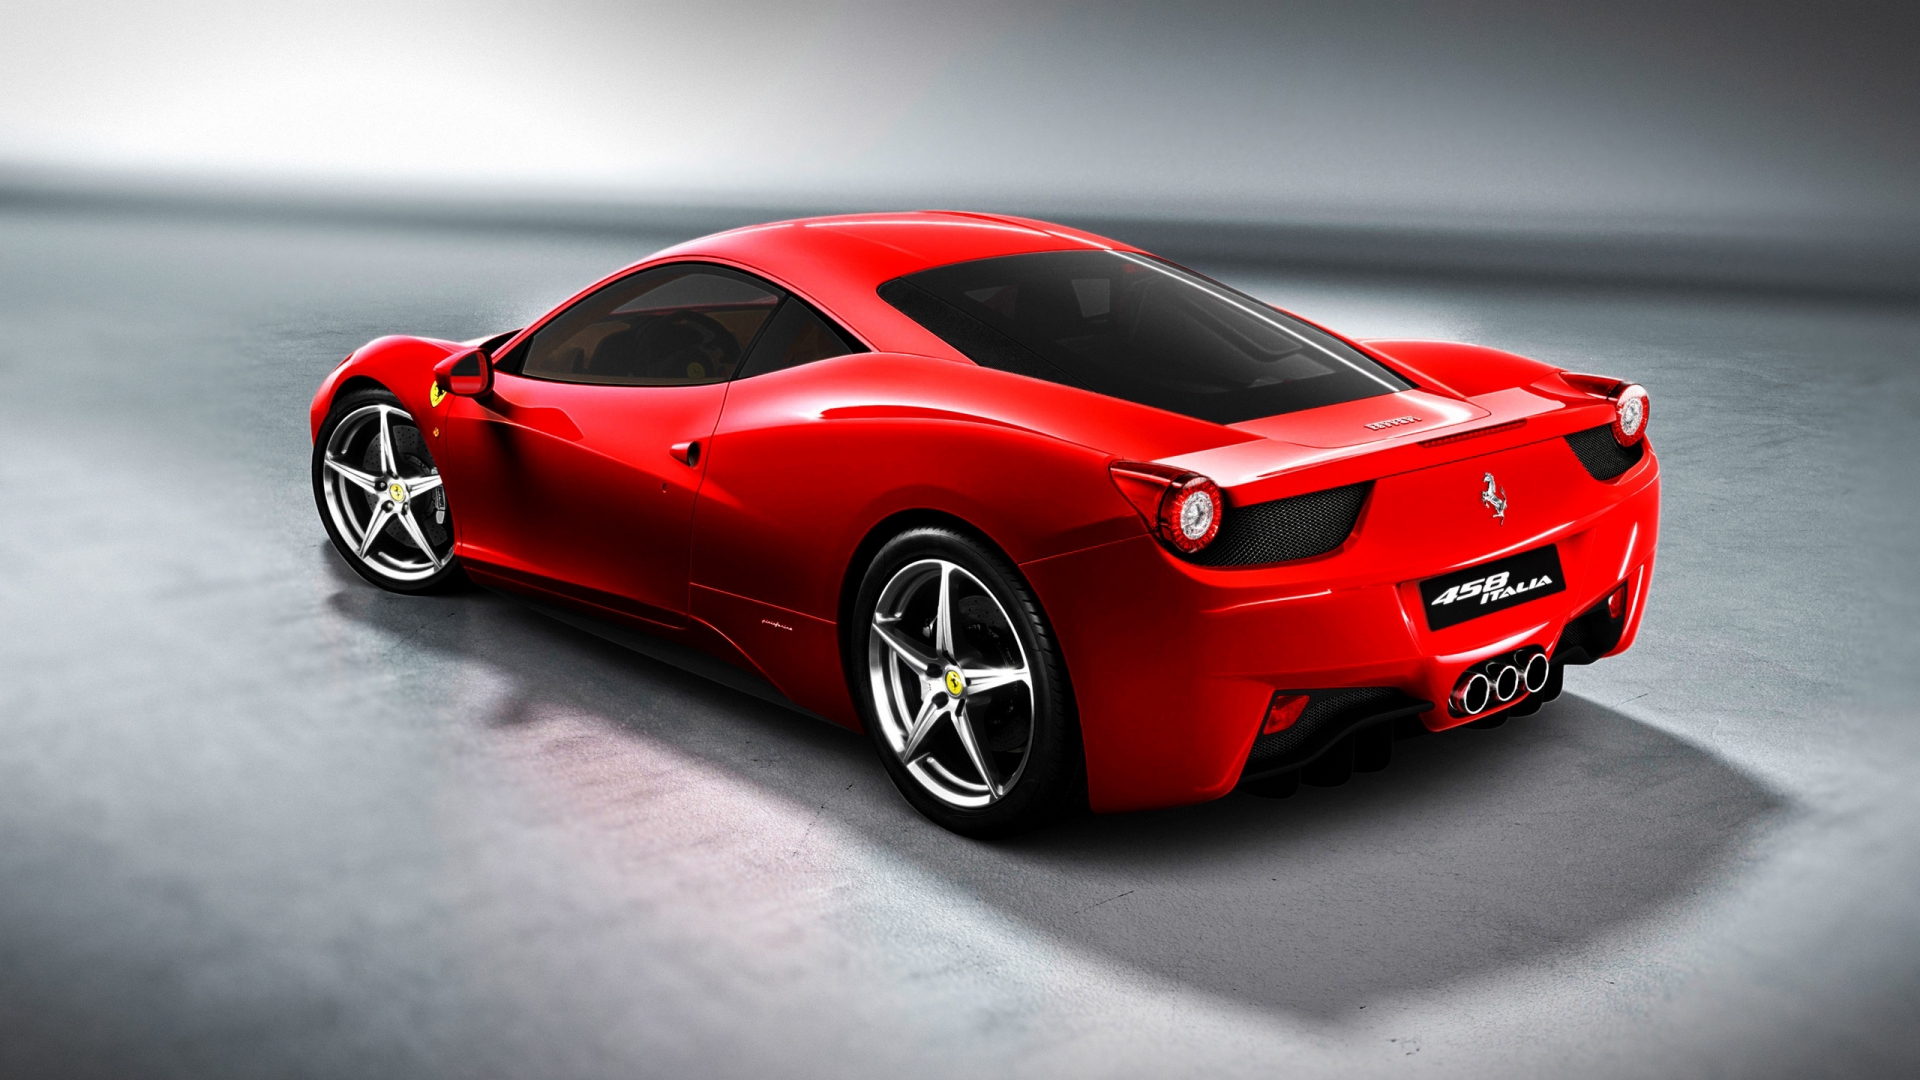 Ferrari 458 for 1920 x 1080 HDTV 1080p resolution